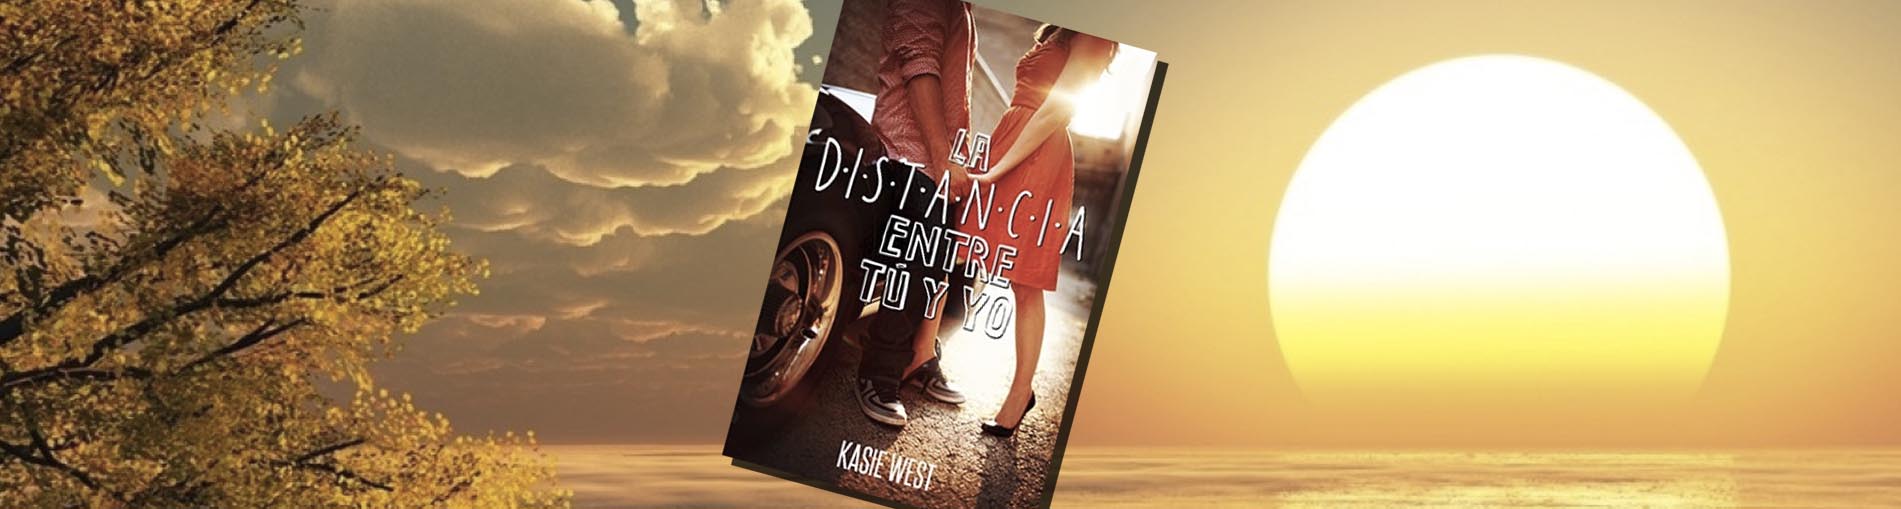 5 razones para leer… “La distancia entre tú y yo” de Kasie West